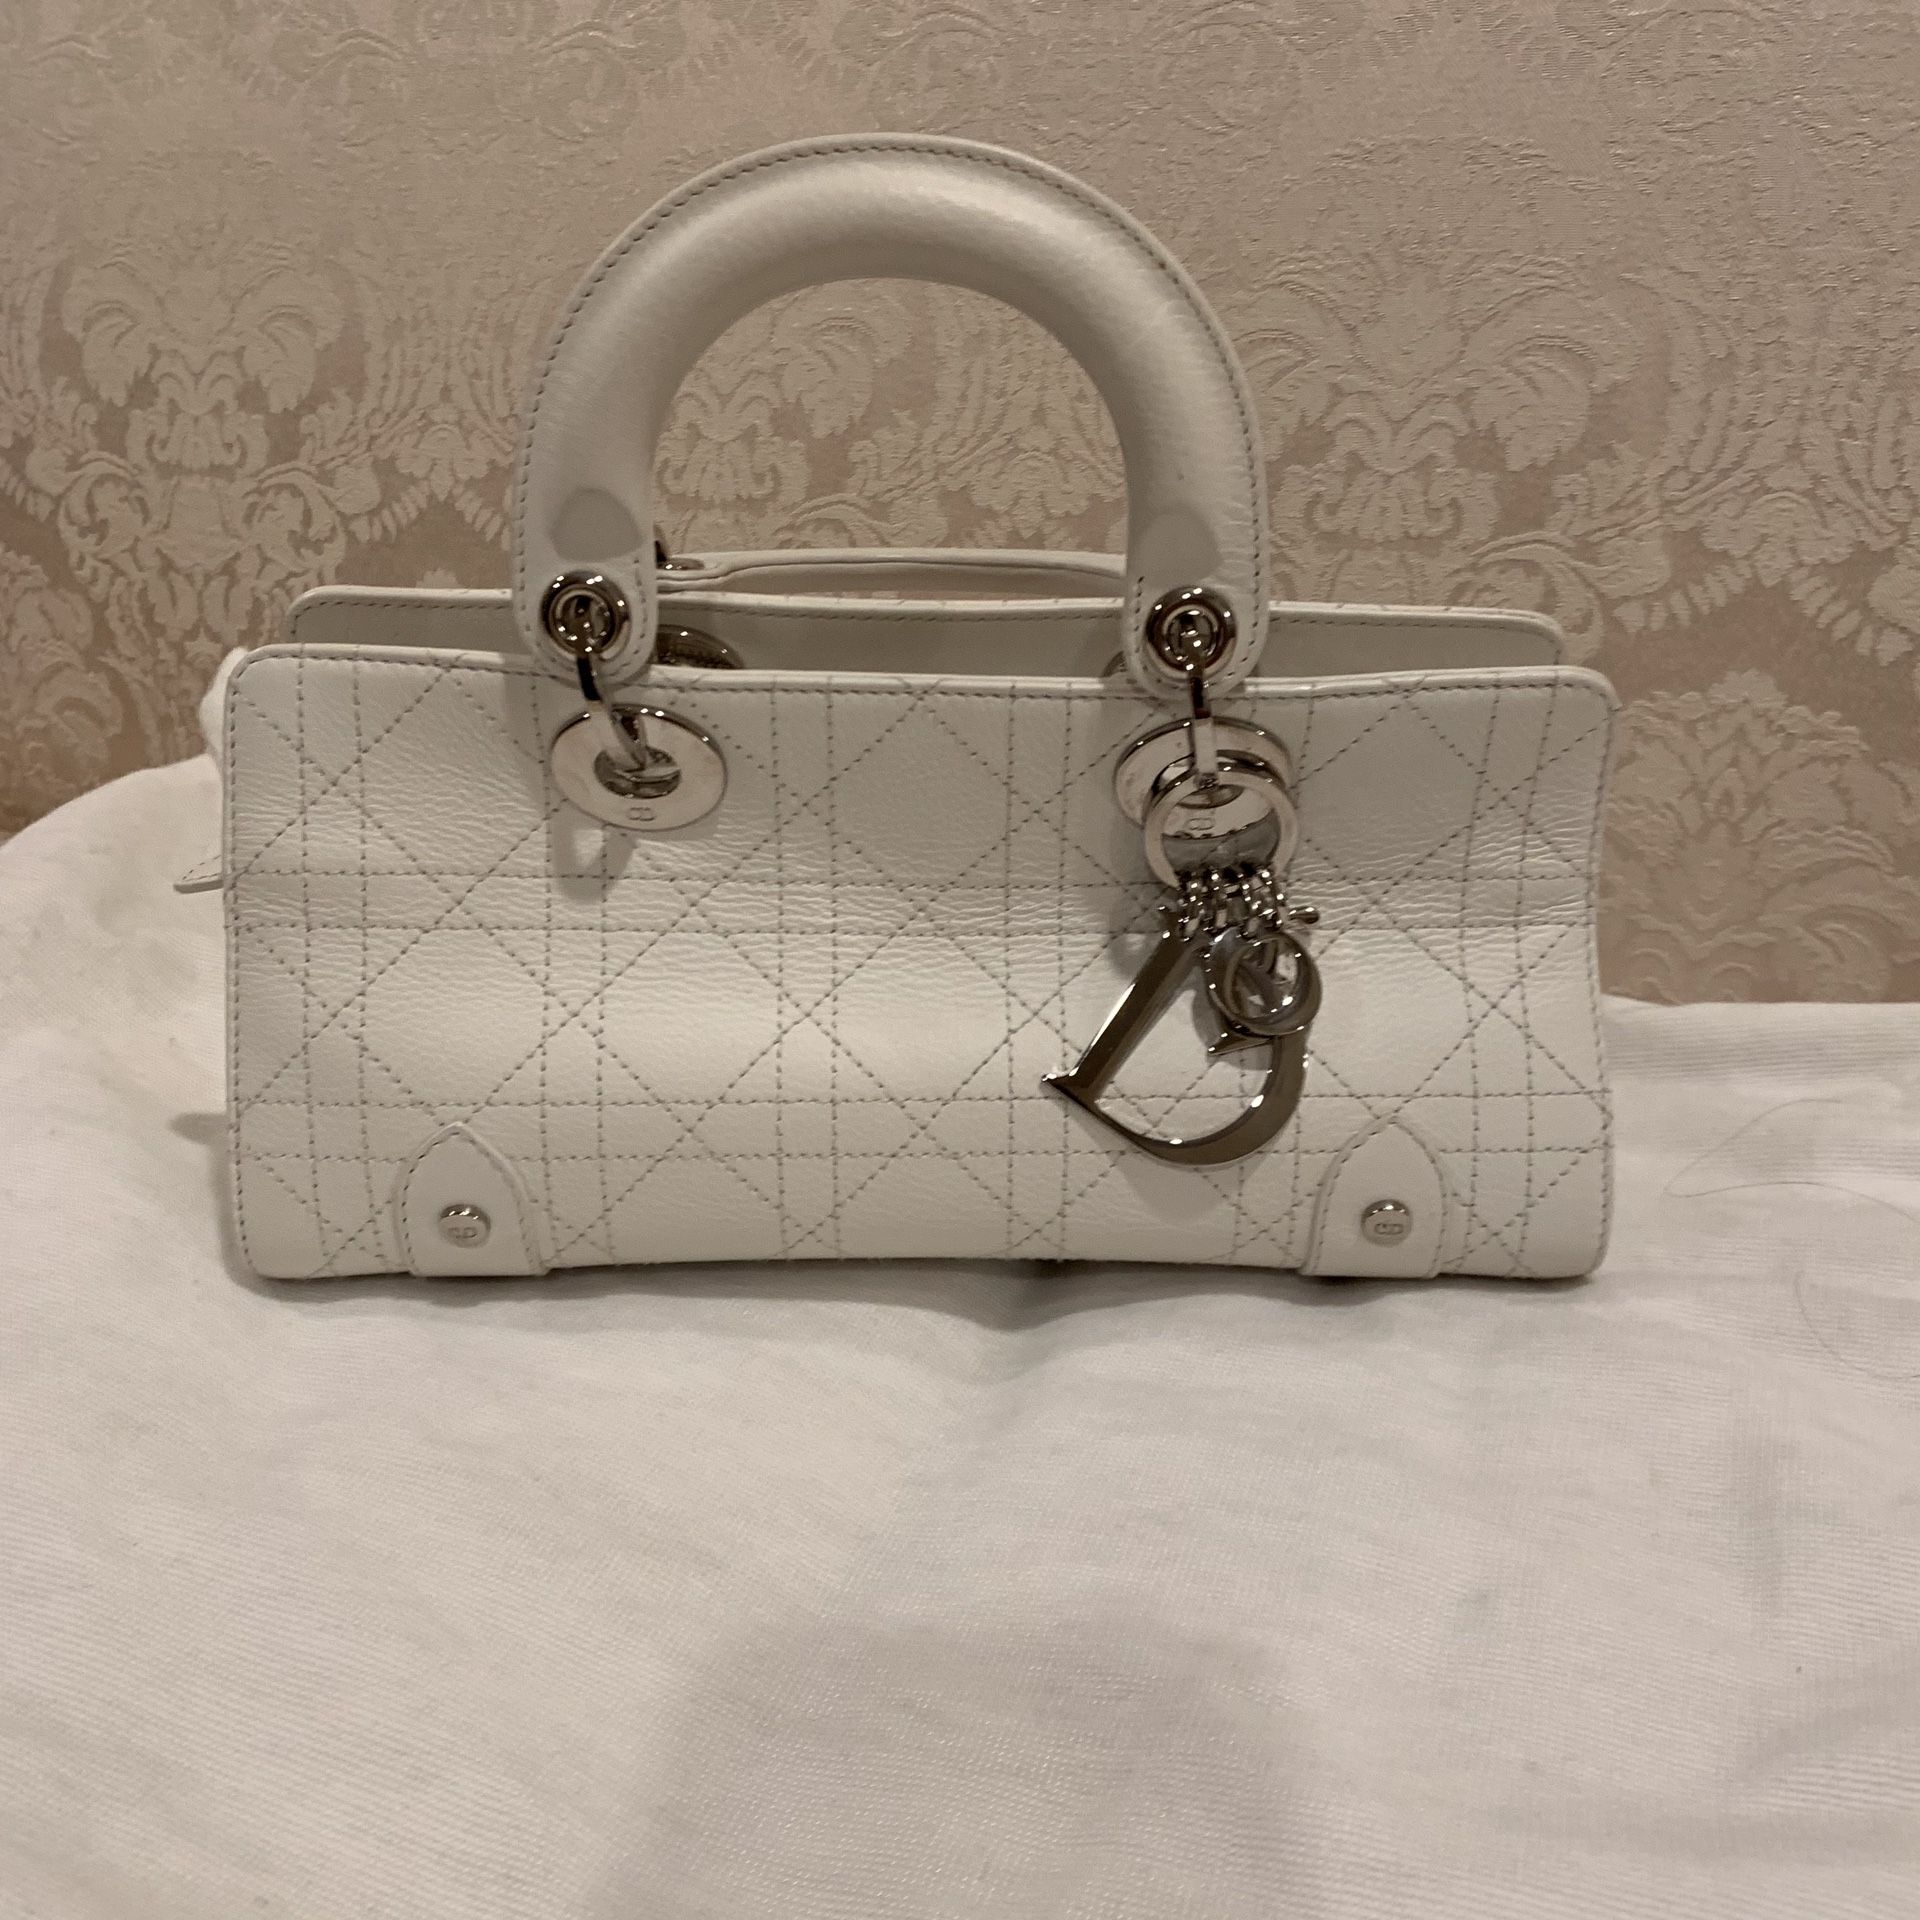 Christian Dior Handbag Used like new